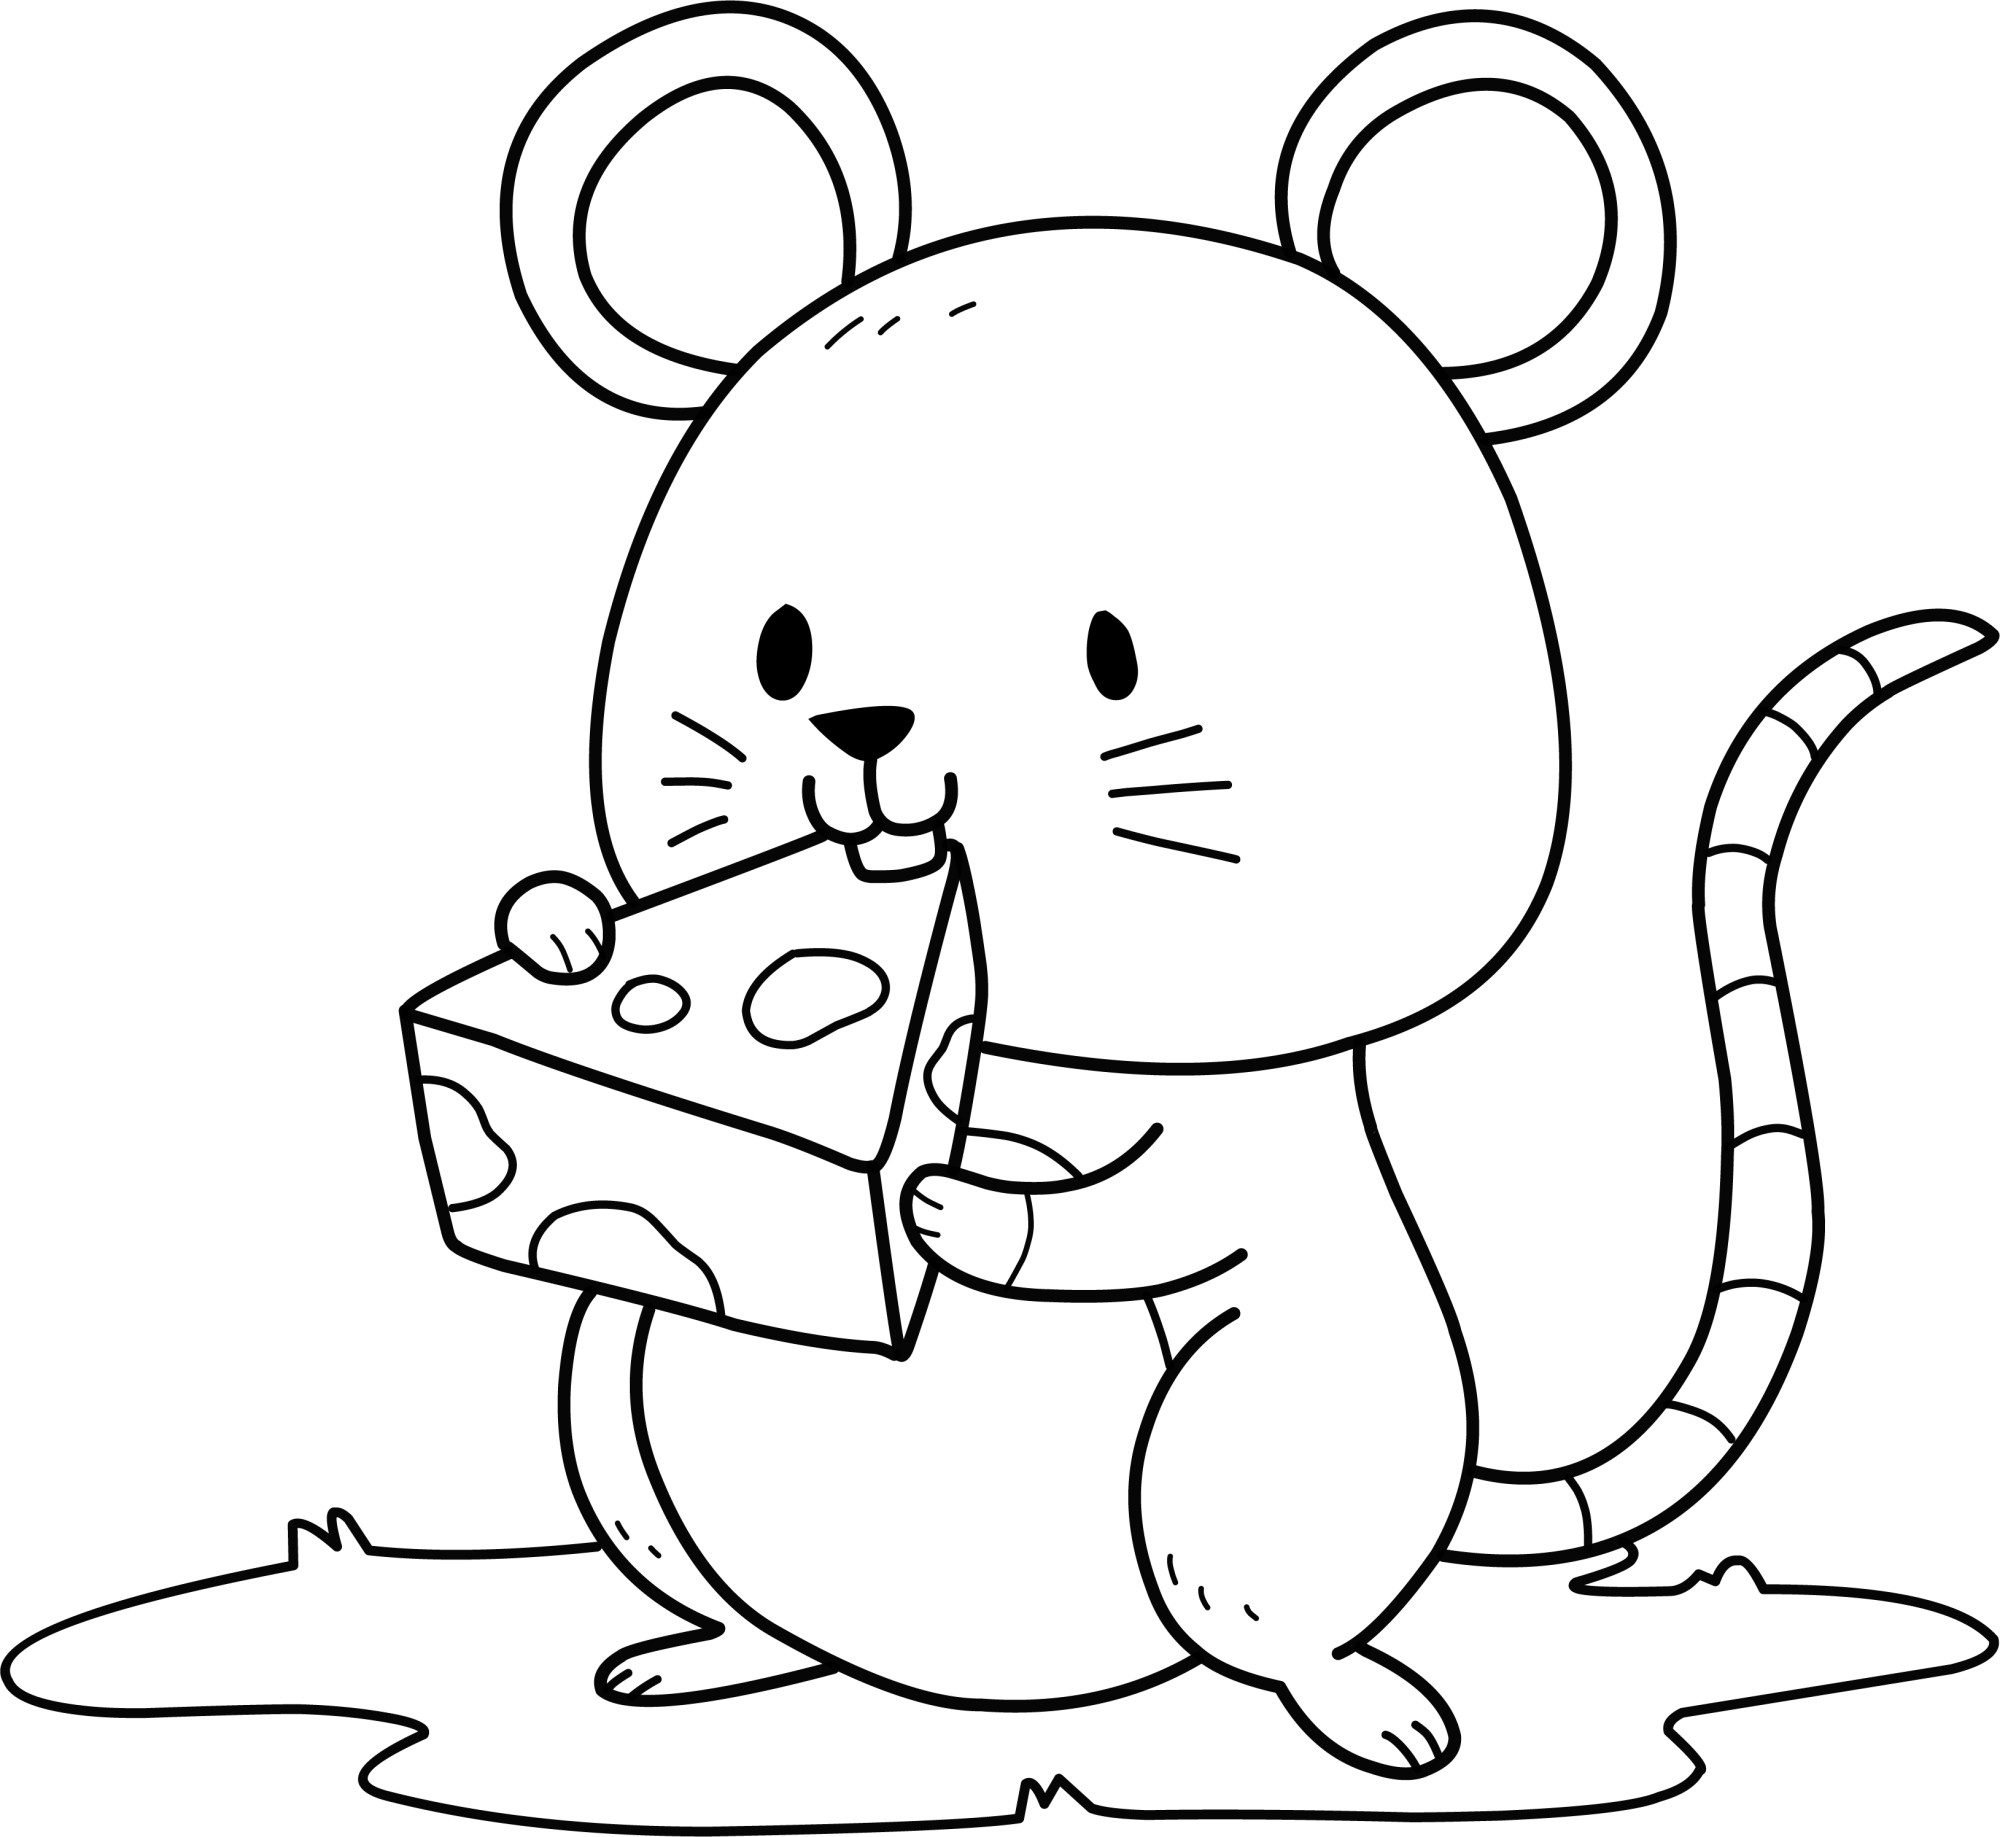 Раскраска для детей: мышь с кусочком сыра